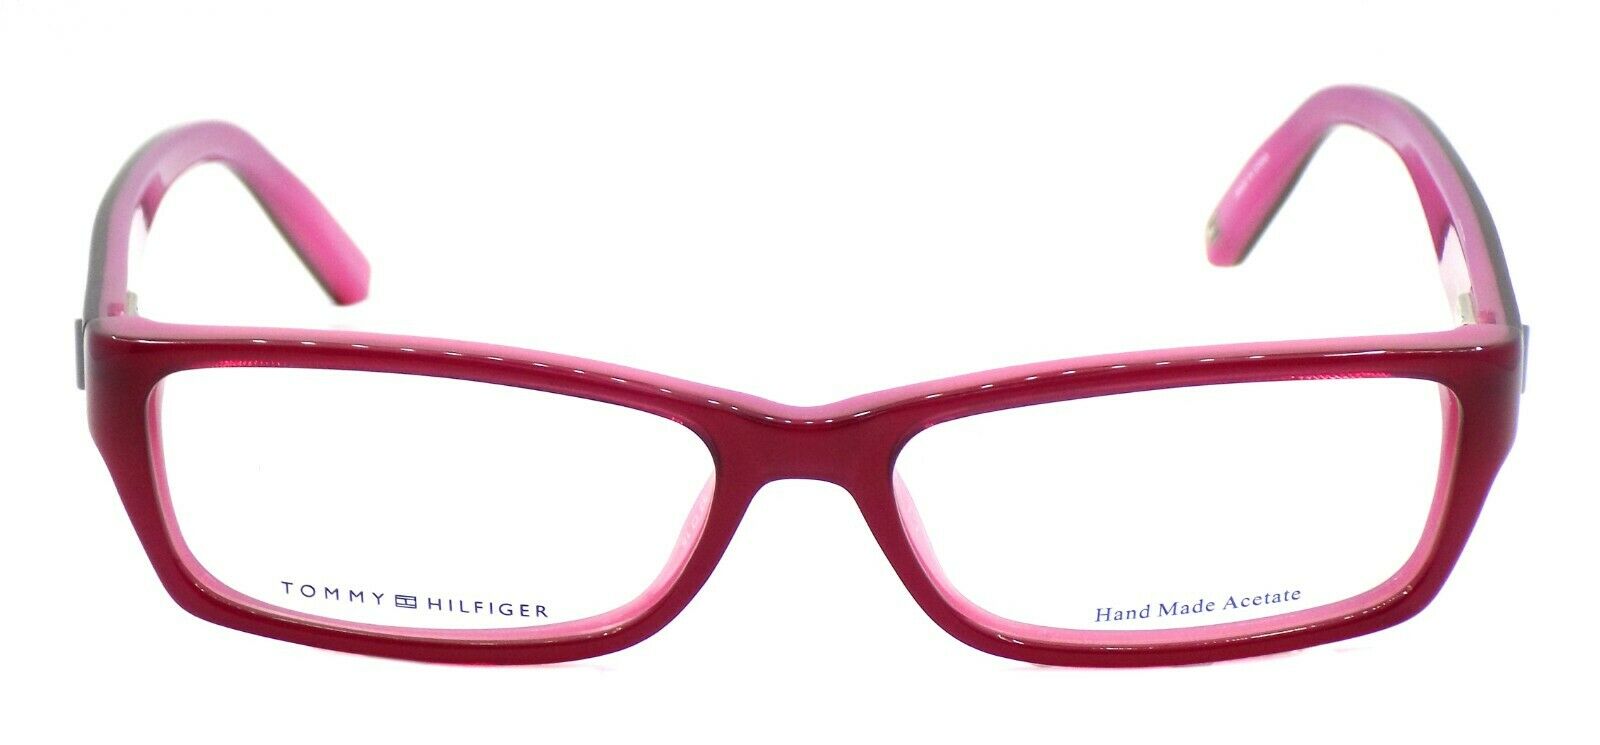 2-TOMMY HILFIGER TH 1046 0T5 Women's Eyeglasses Frames 53-15-140 Burgundy / Pink-827886927715-IKSpecs